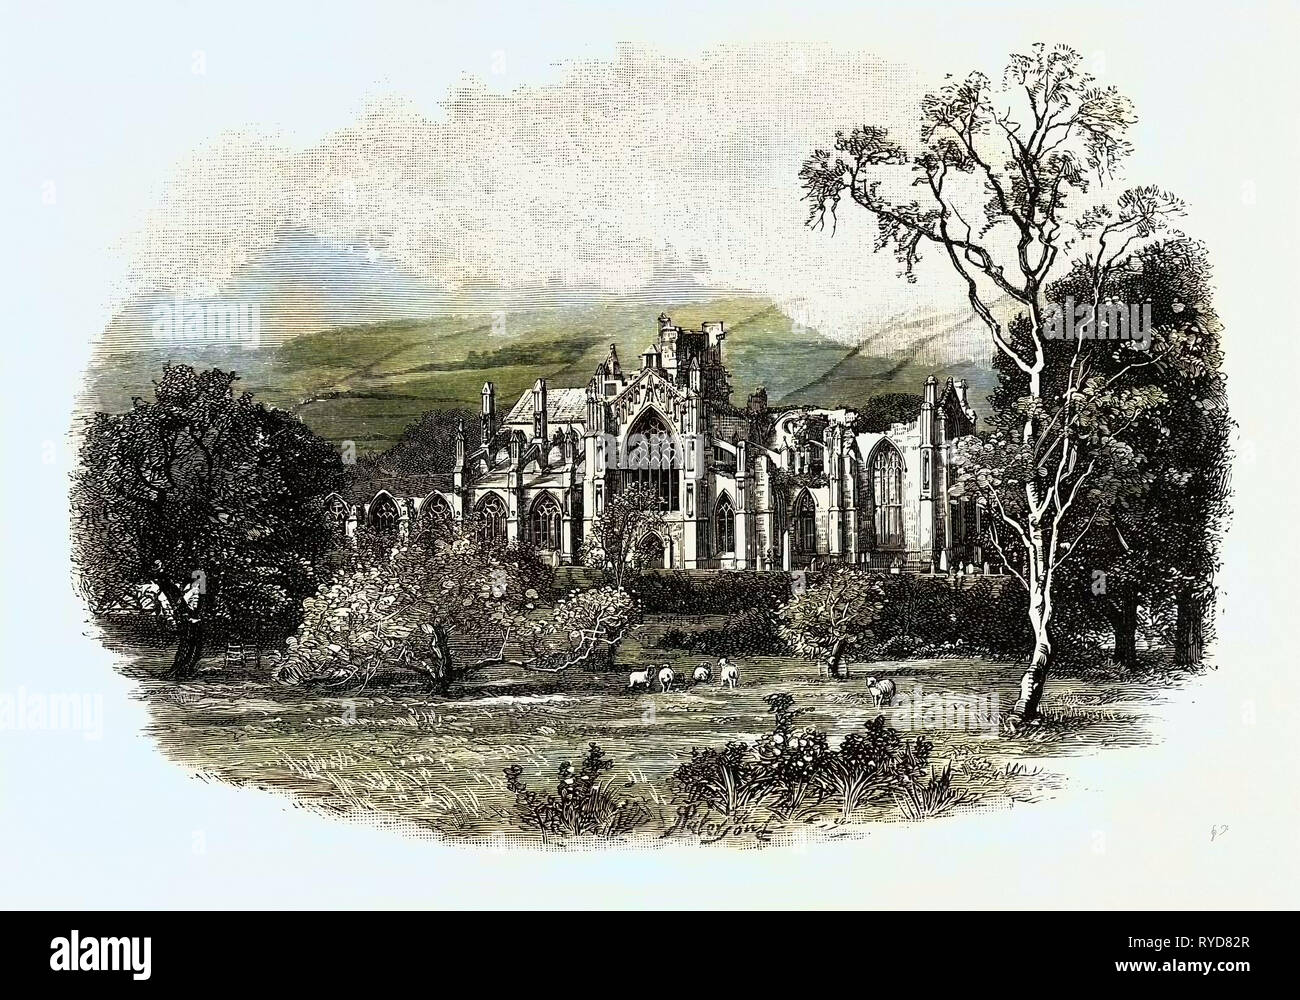 Melrose Abbey, dal sud-est. Melrose Abbey è una abbazia Gothic-Style in Melrose, Scozia. Essa è stata fondata nel 1136 da monaci cistercensi, su richiesta del re Davide I di Scozia. Essa è stata presieduta dall Abate o Commendator di Melrose. Regno Unito Foto Stock